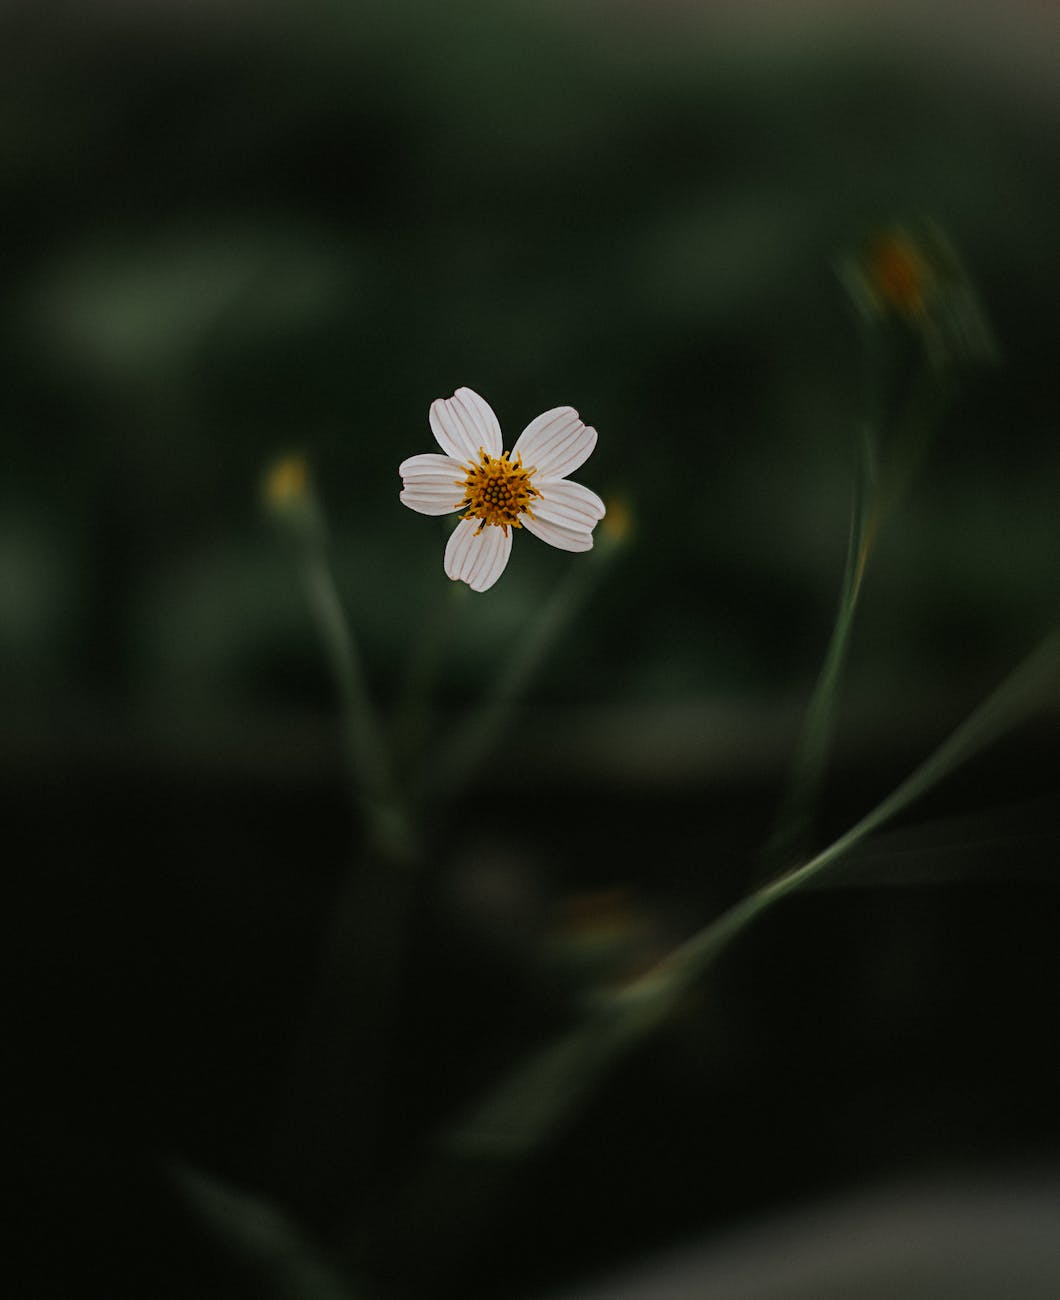 a photo of white flower in tilt shift lens